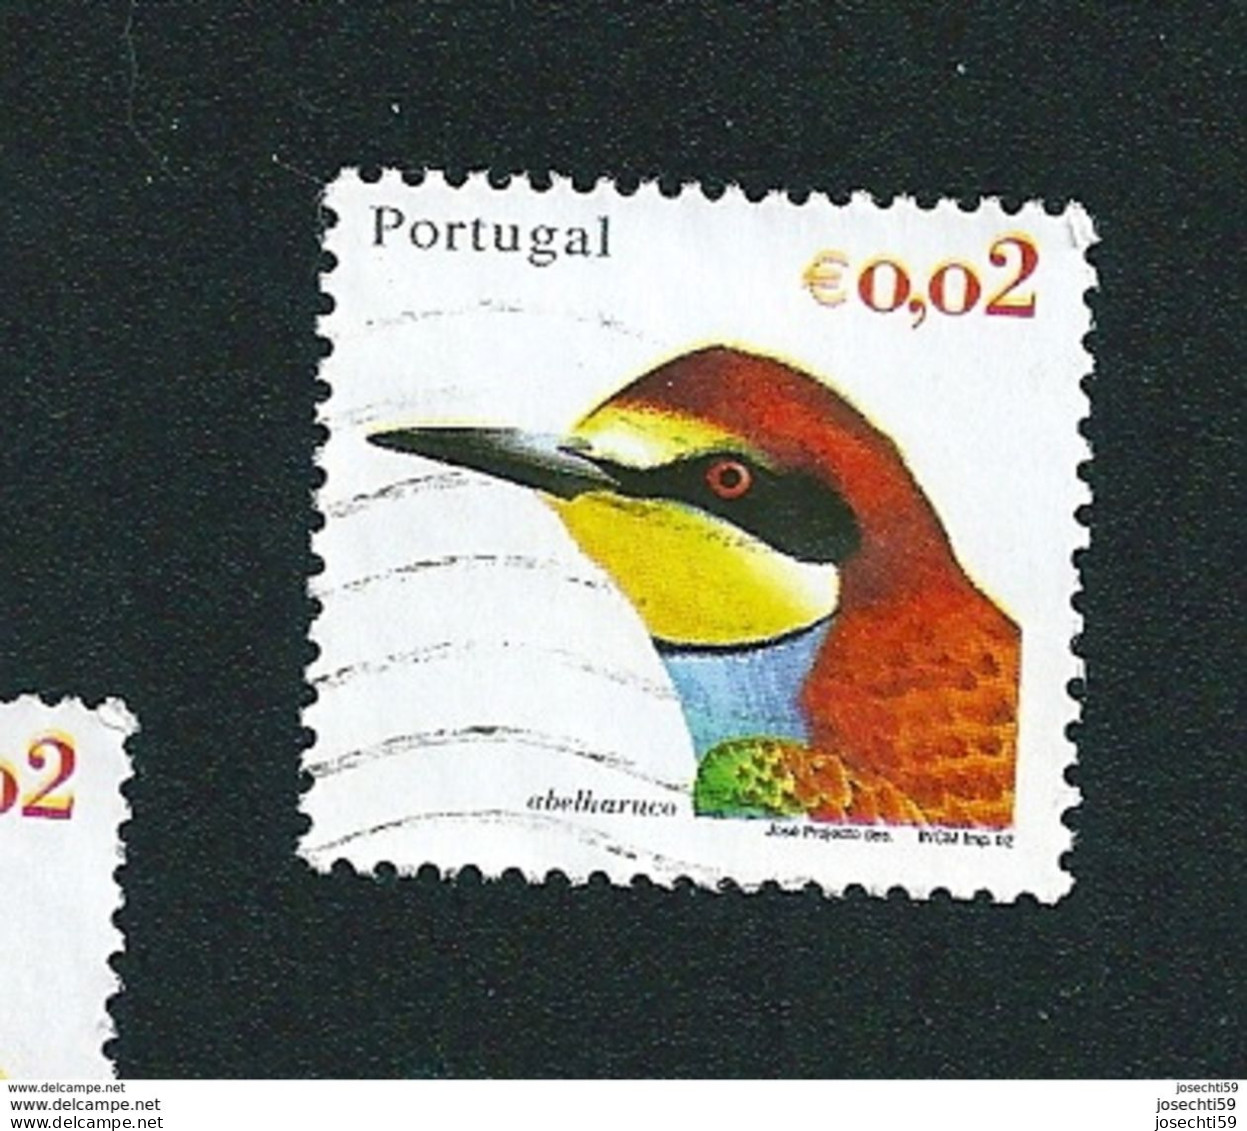 N° 2549 Oiseau Du Portugal Abelharuco   0.02 € Oblitéré Timbre  Portugal 2002 - Usati